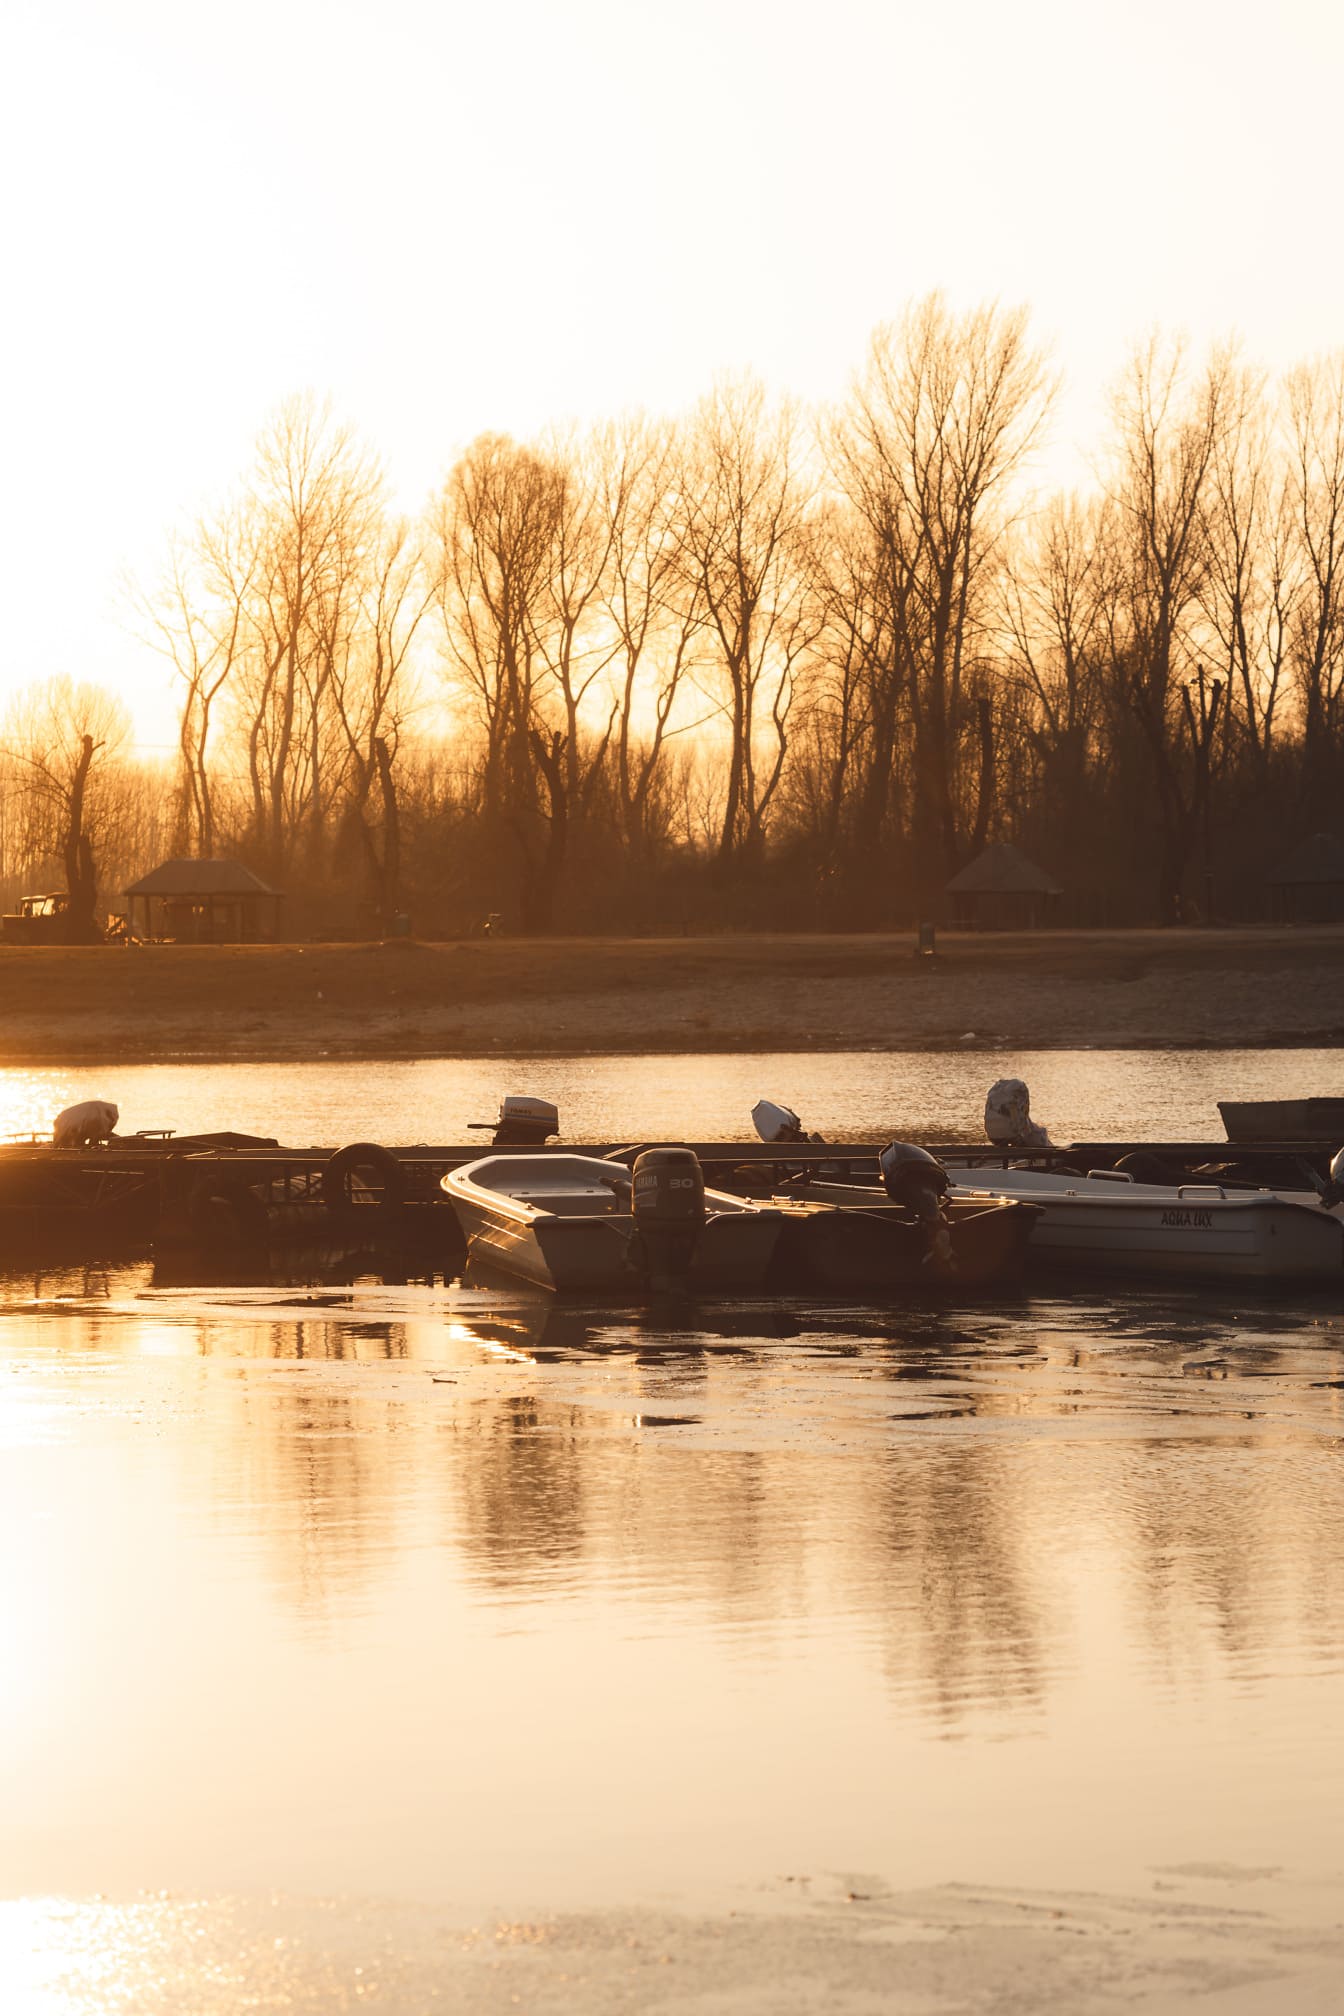 Słońce w porcie na jeziorze z łodziami rybackimi w sezonie letnim